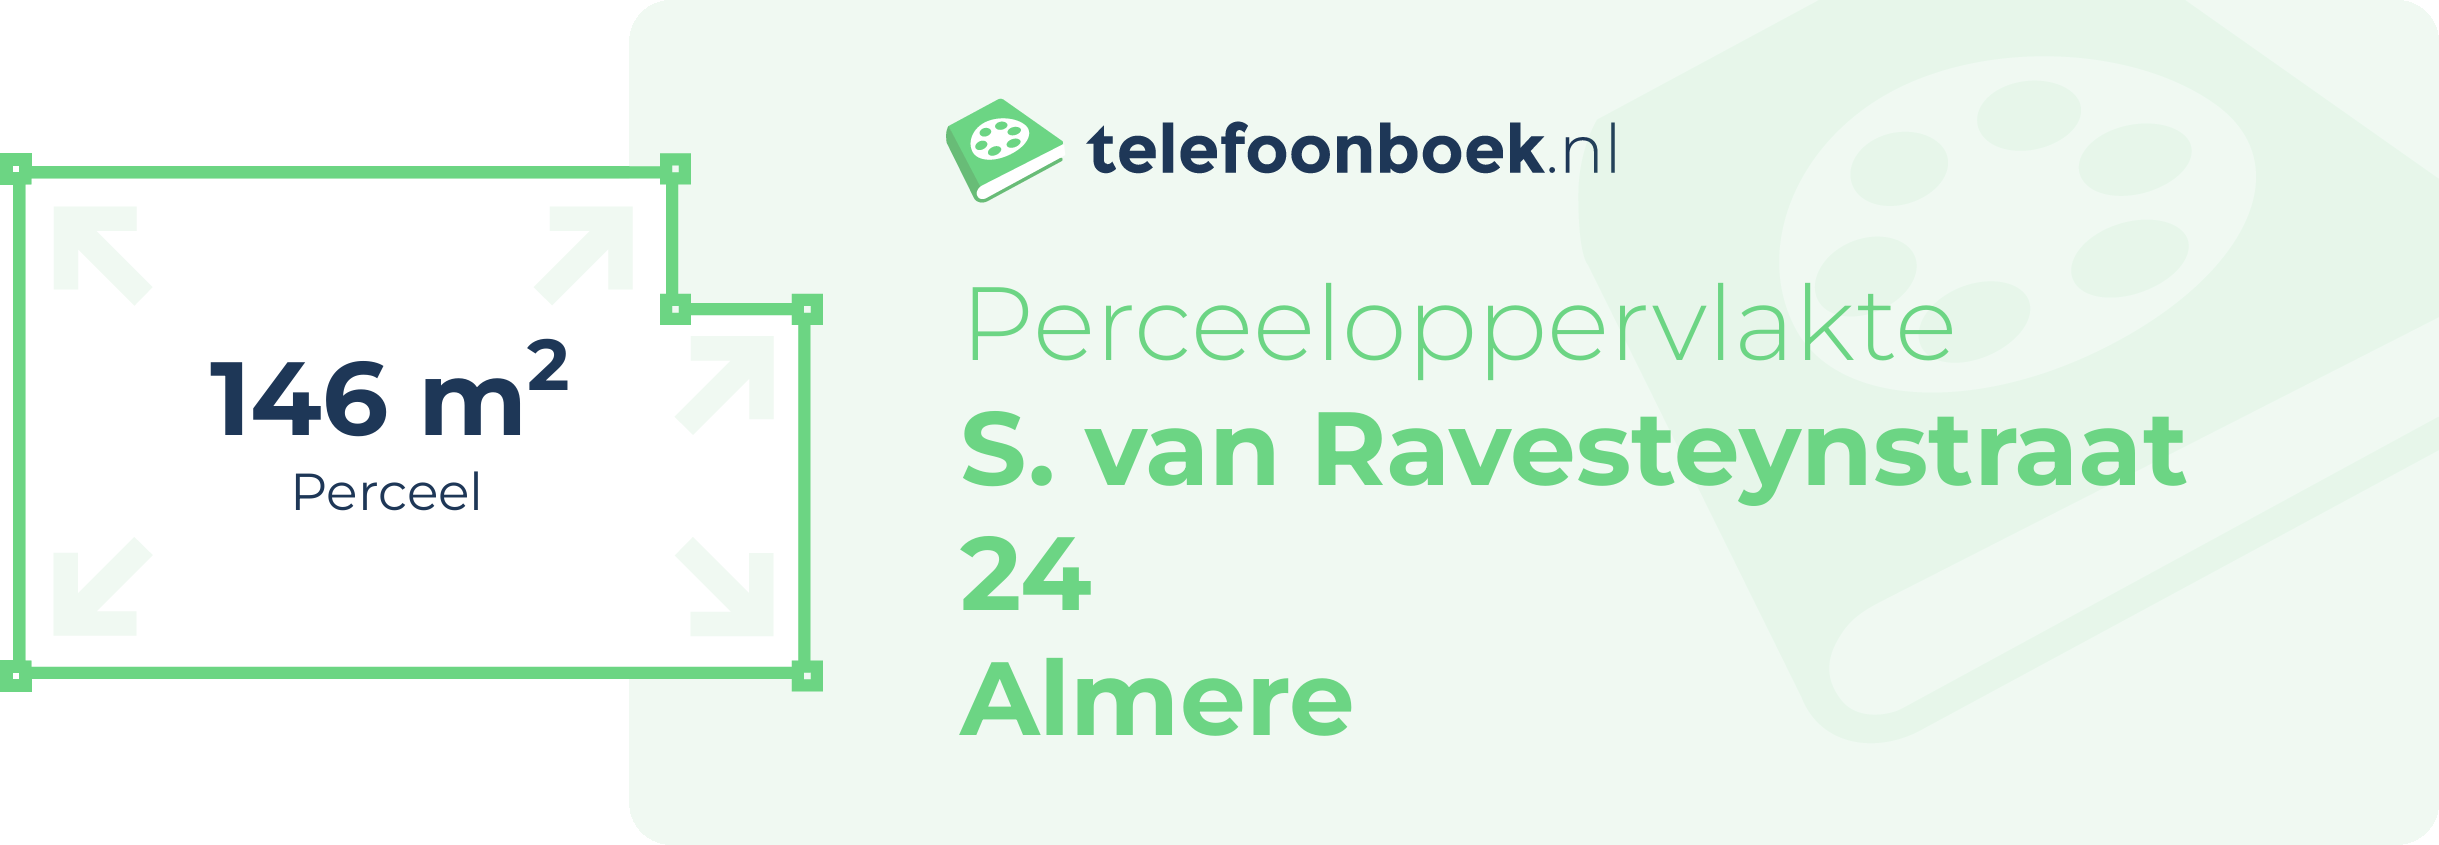 Perceeloppervlakte S. Van Ravesteynstraat 24 Almere